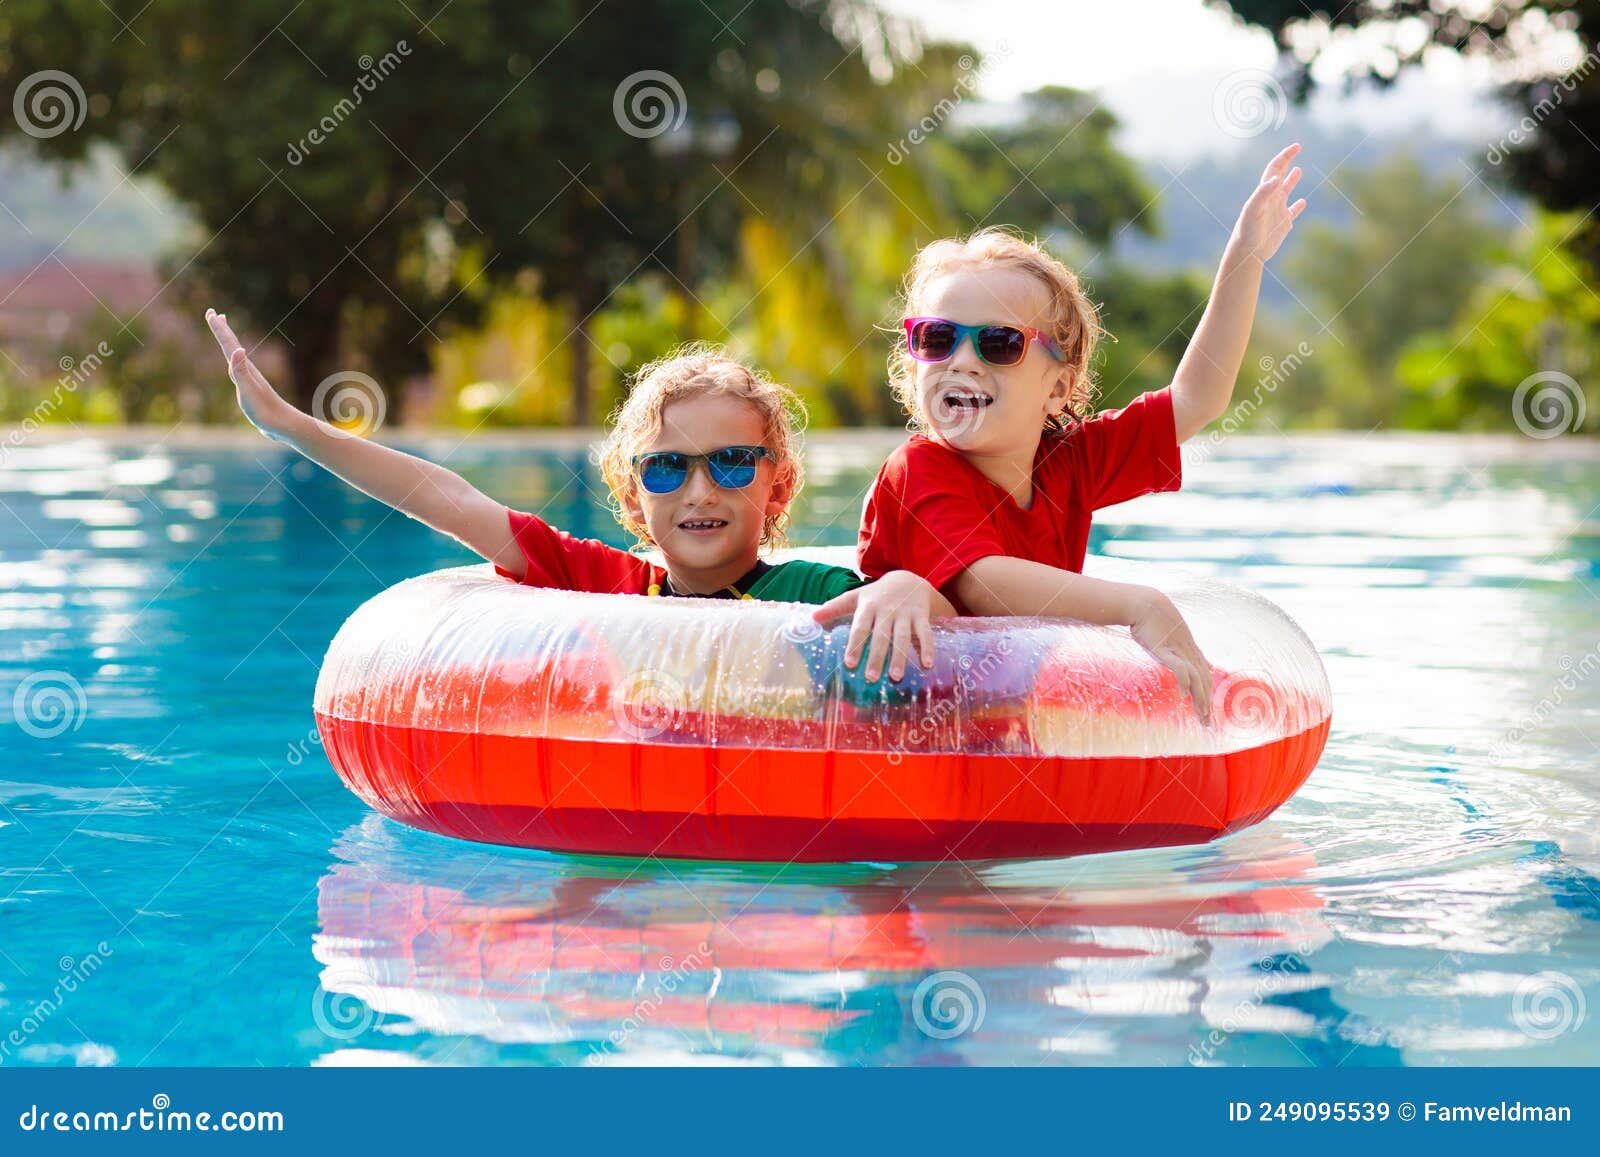 Enfants bébé gilet de natation plongée gilet de sauvetage pour été